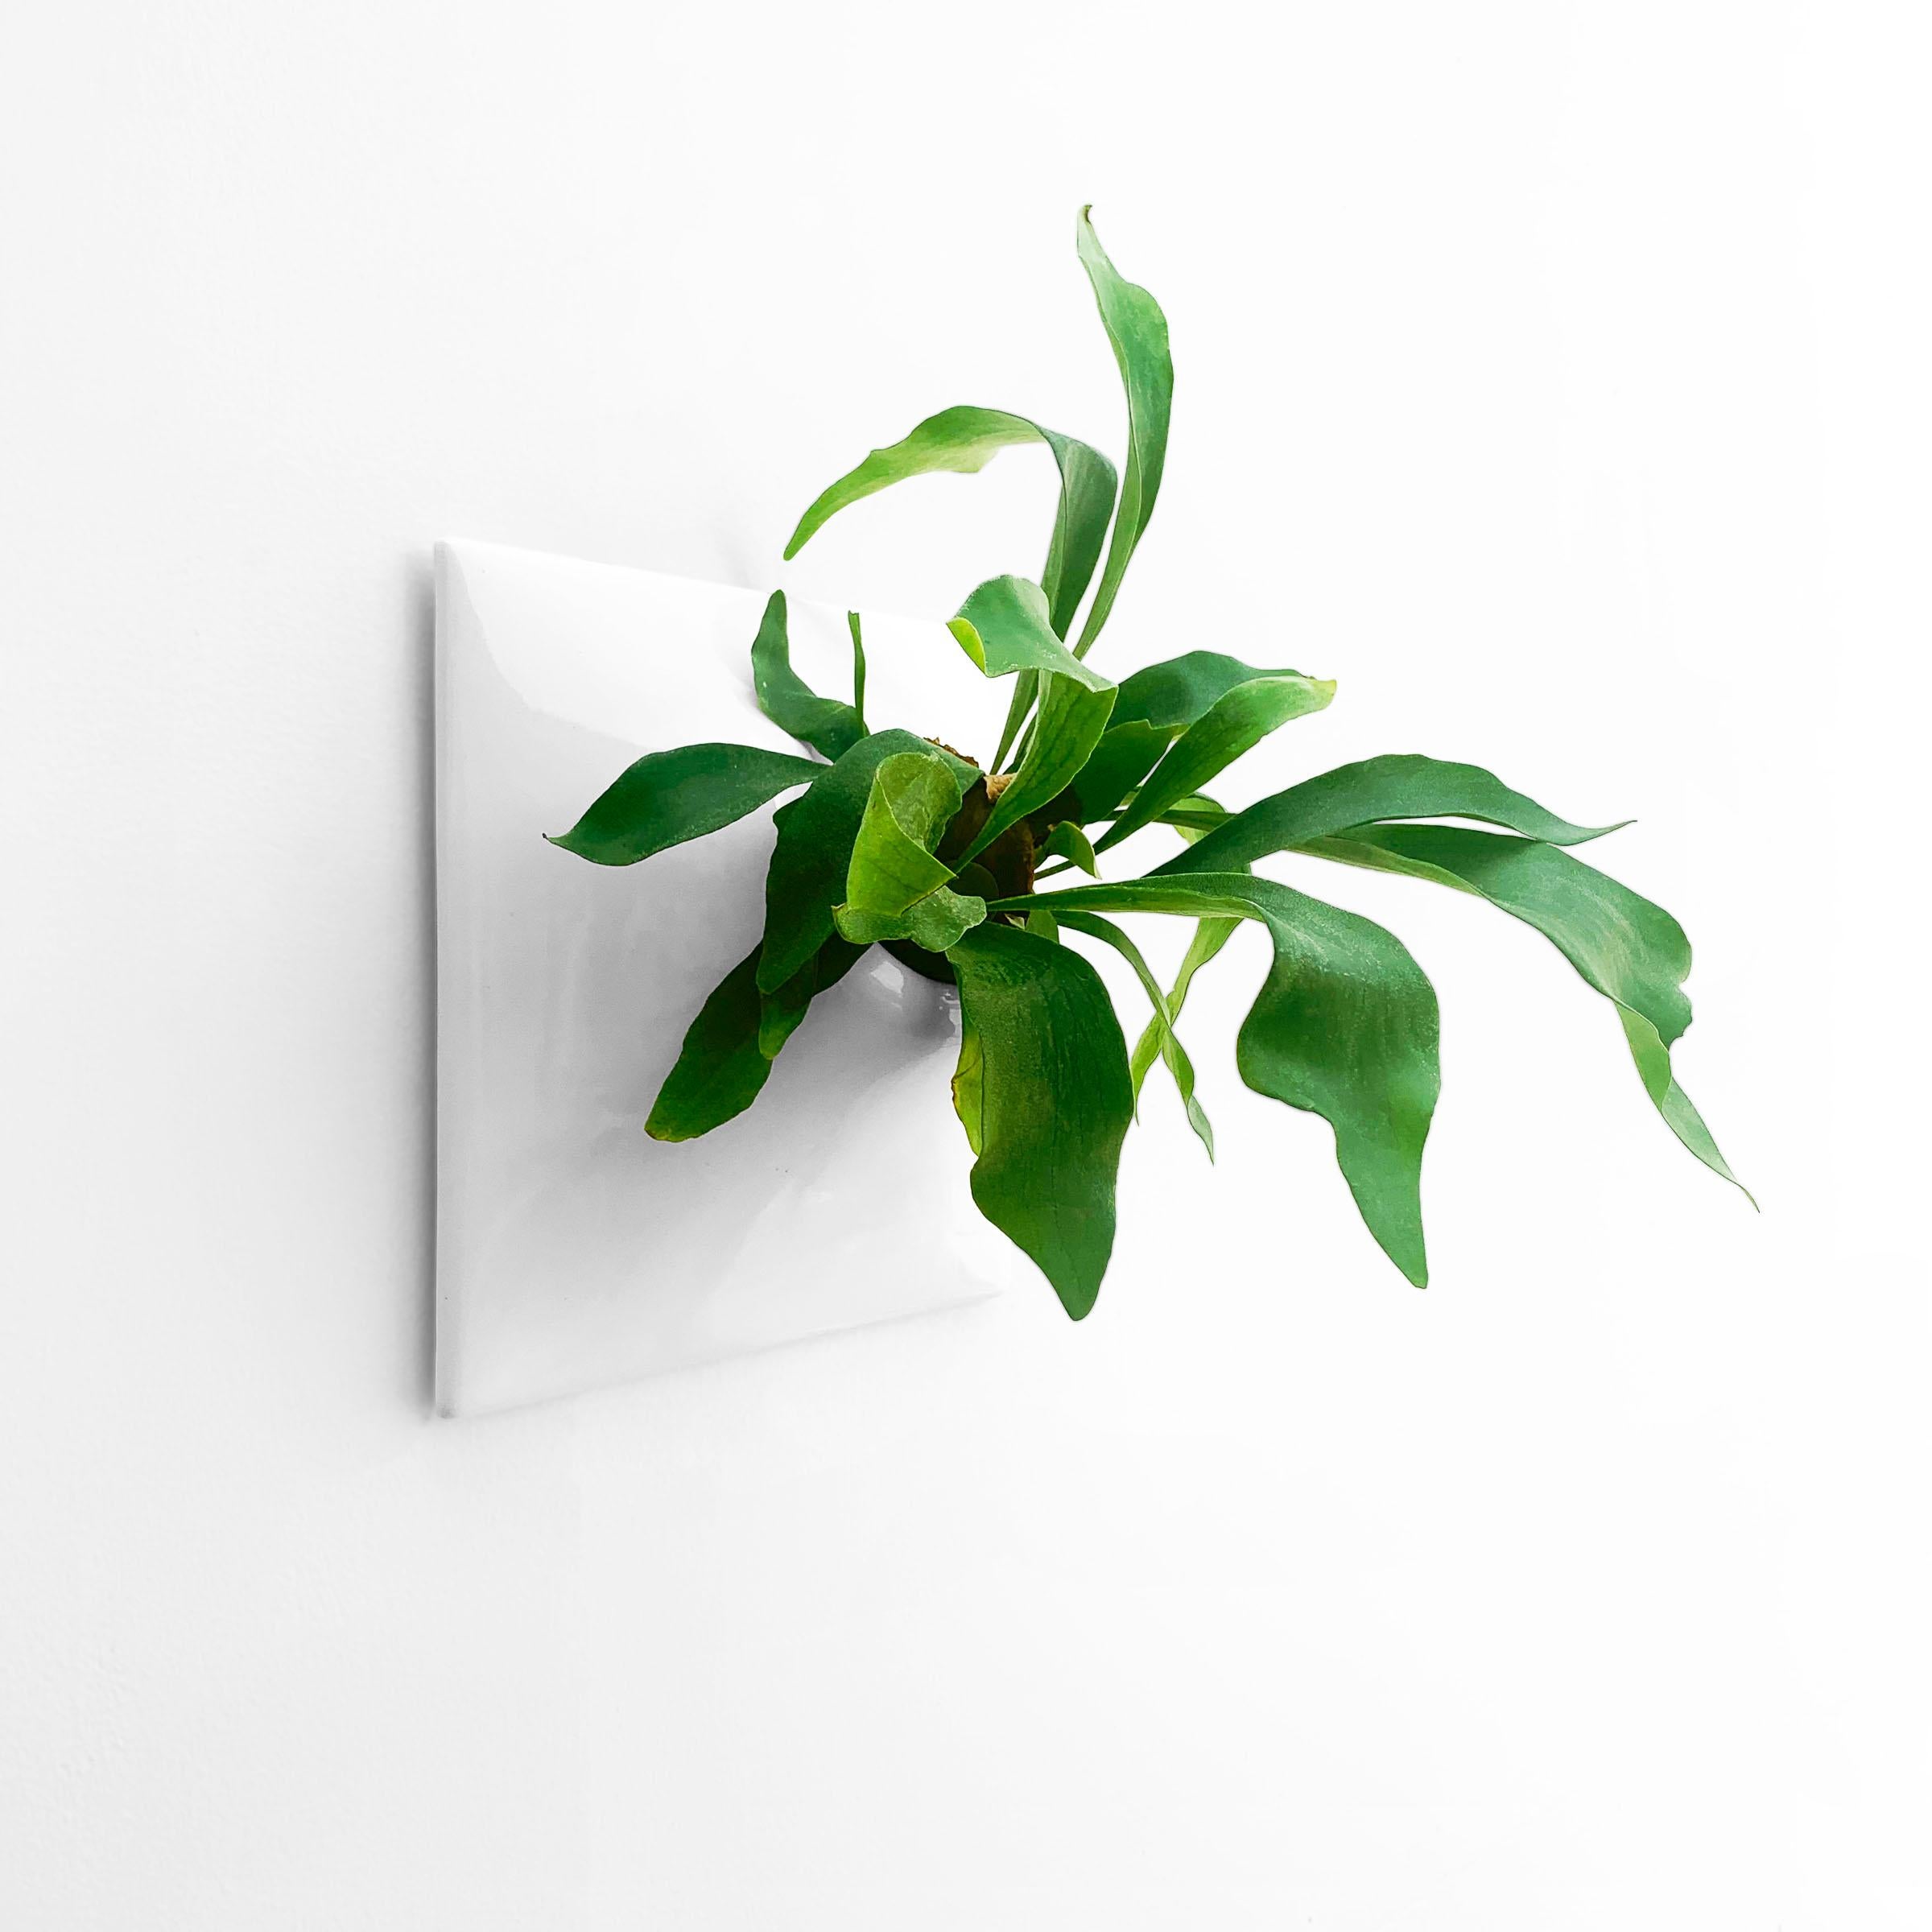 American Modern White Wall Planter, Plant Wall Sculpture, Wall Art Decor, Node 12